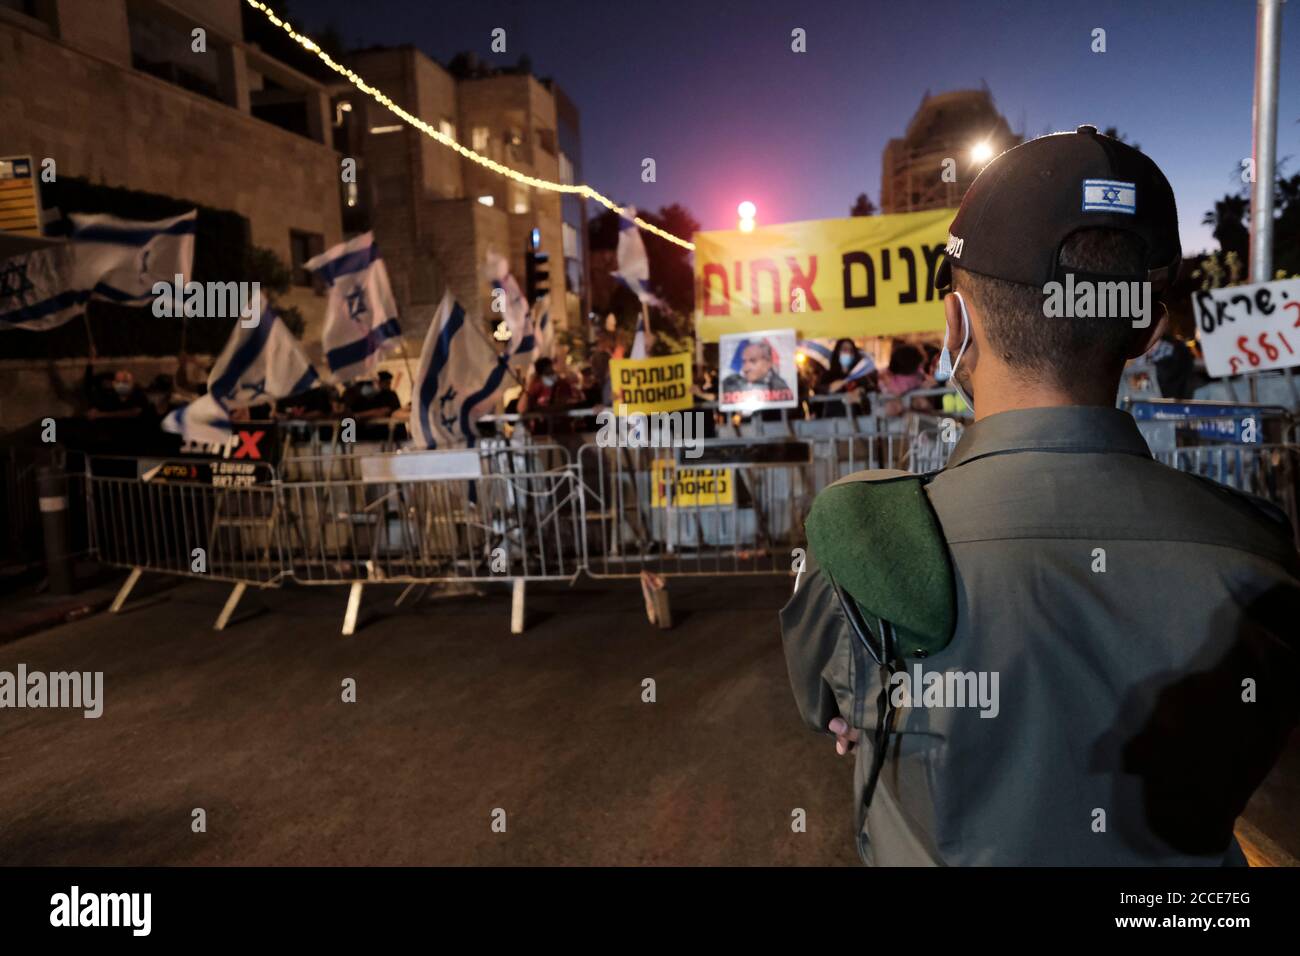 JÉRUSALEM, ISRAËL - 20 AOÛT : la police fait observer que les manifestants branchent des pancartes et crient des slogans lors d'une manifestation contre le Premier ministre Benjamin Netanyahou à la suite de son inculpation pour corruption et manipulation de la pandémie du coronavirus devant la résidence officielle du Premier ministre le 20 août 2020 à Jérusalem, en Israël. Netanyahou est jugé pour une série de cas dans lesquels il aurait reçu des cadeaux somptueux de la part d'amis milliardaires et échangé des faveurs réglementaires avec des magnats des médias pour une couverture plus favorable de lui-même et de sa famille. Banque D'Images